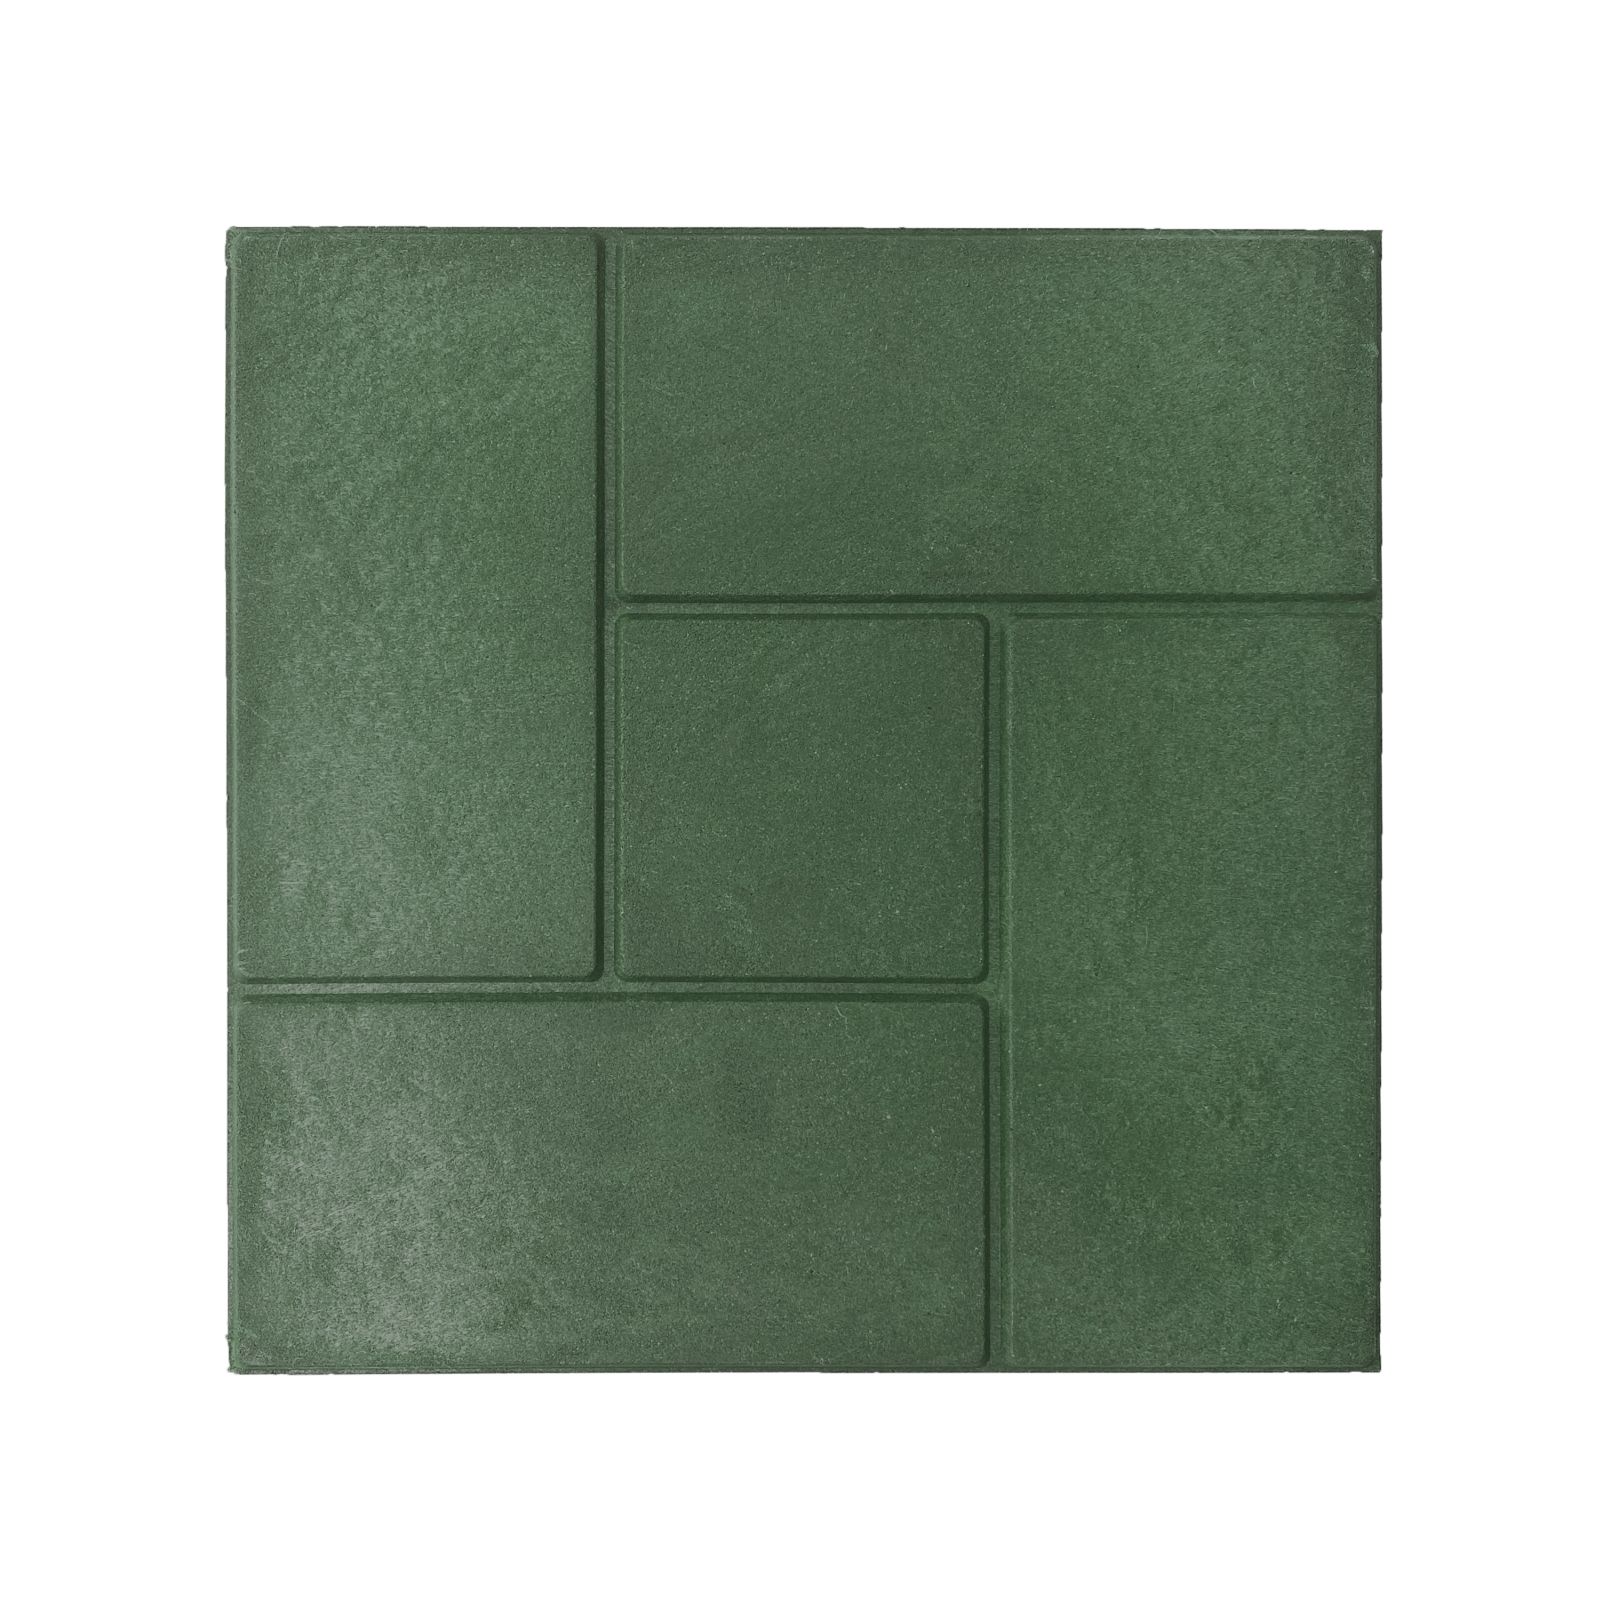 Плитка резиновая Экогум Калифорния 35х35см, толщина 20мм, цвет зеленый, 4шт/уп